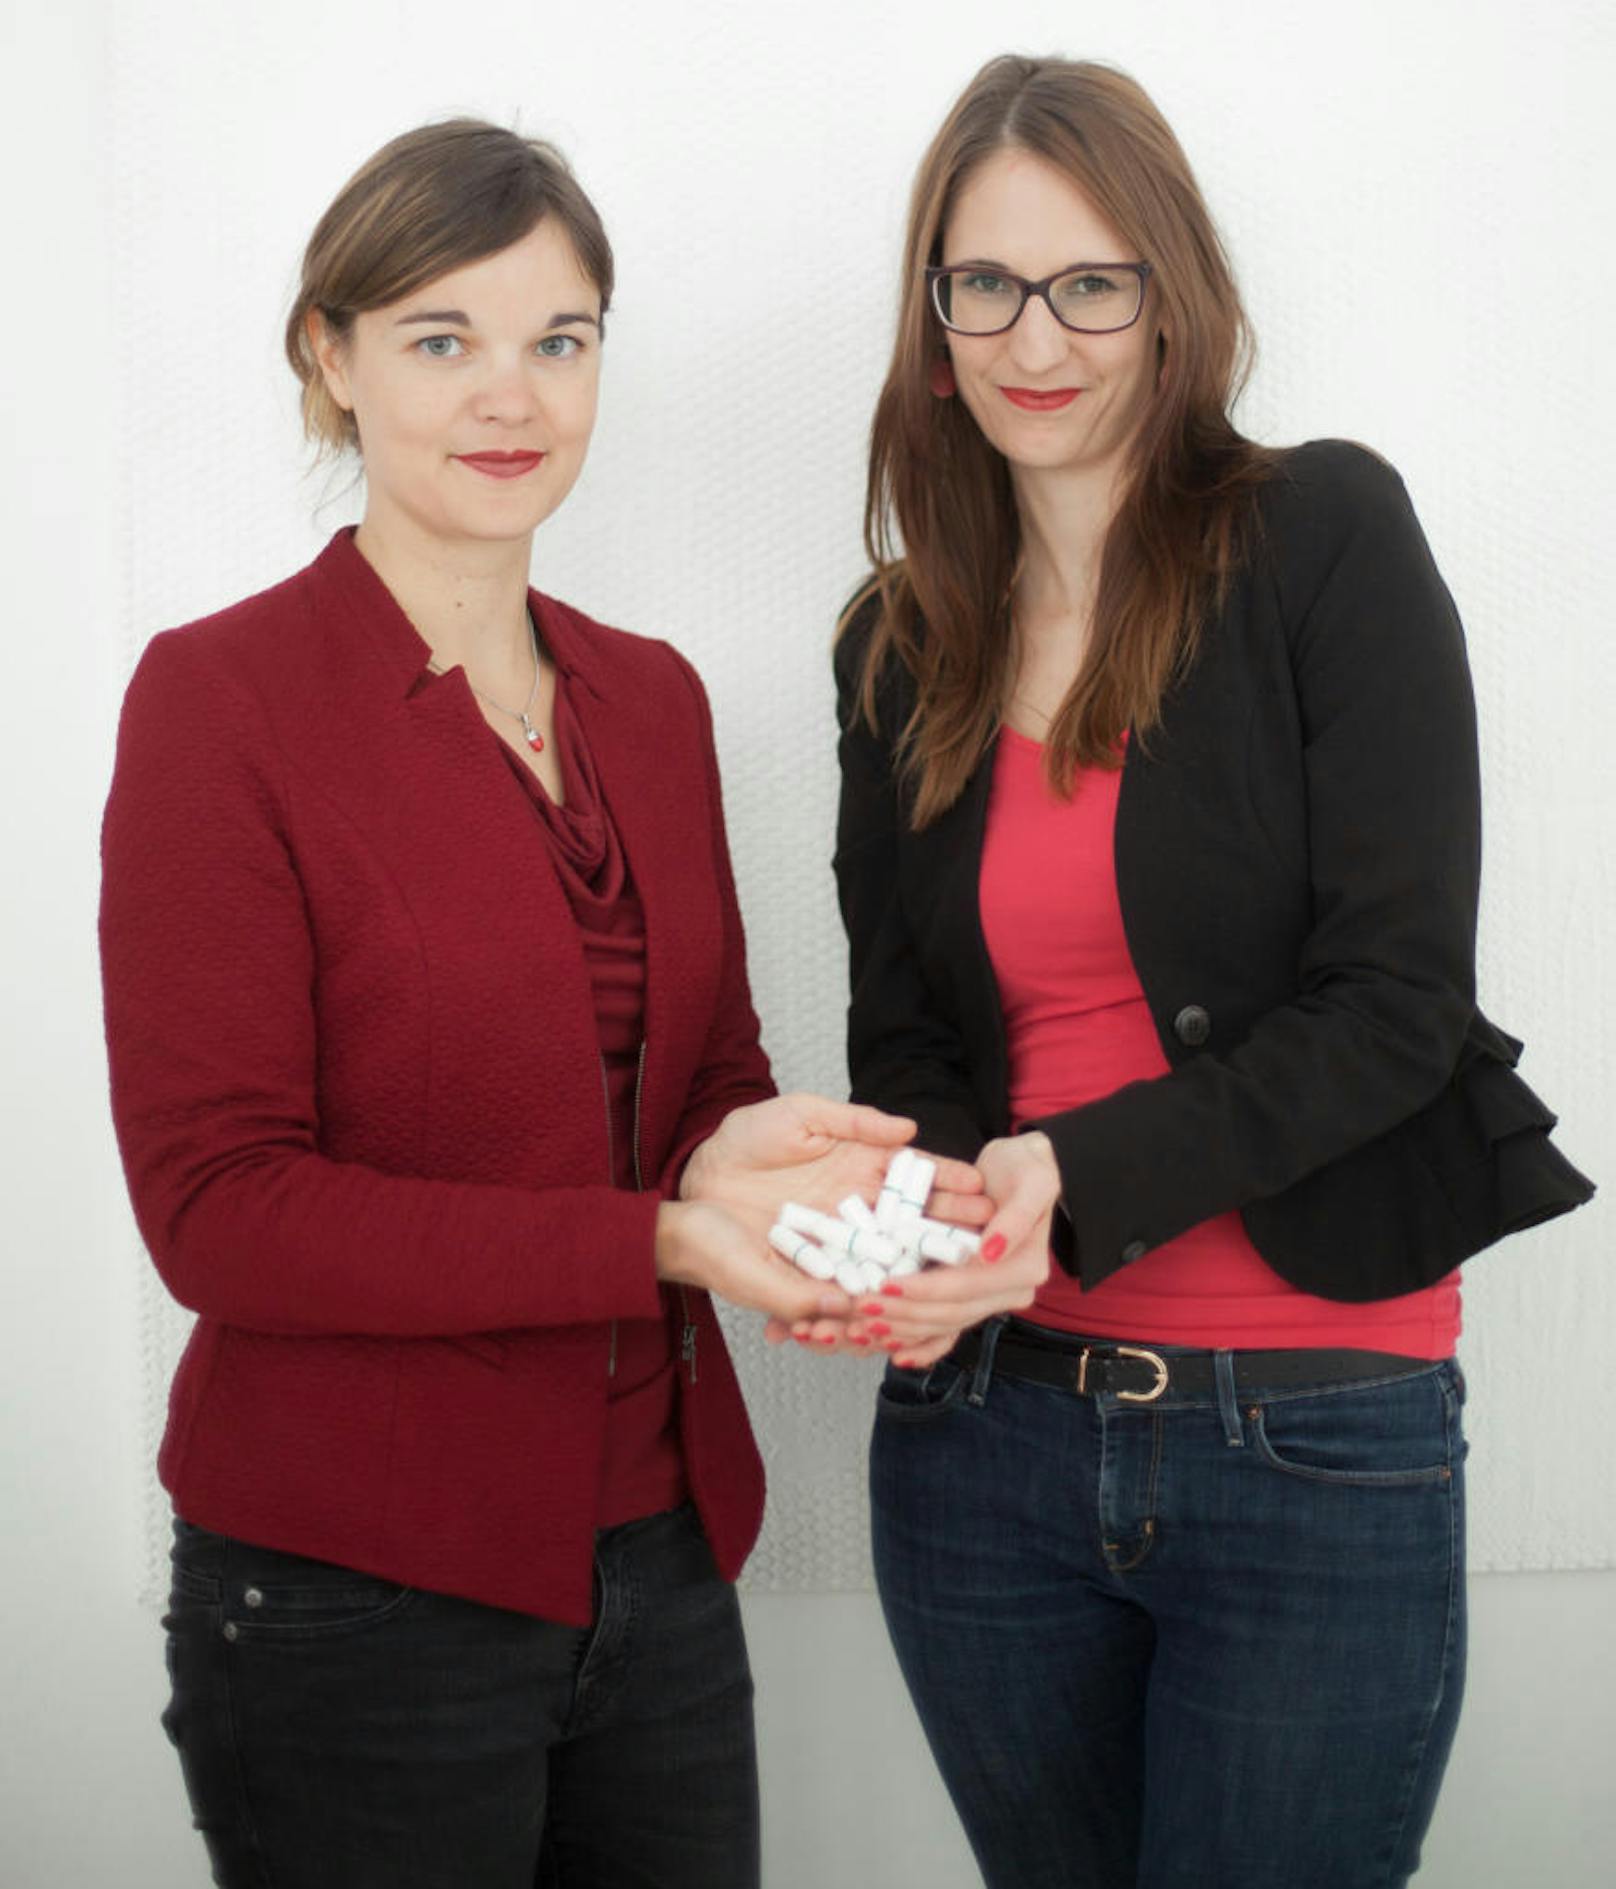 erdbeerwoche-Gründerinnen Steinbrugger und Harant fordern mehr Aufklärung zu Menstruation und Monatshygiene an Schulen